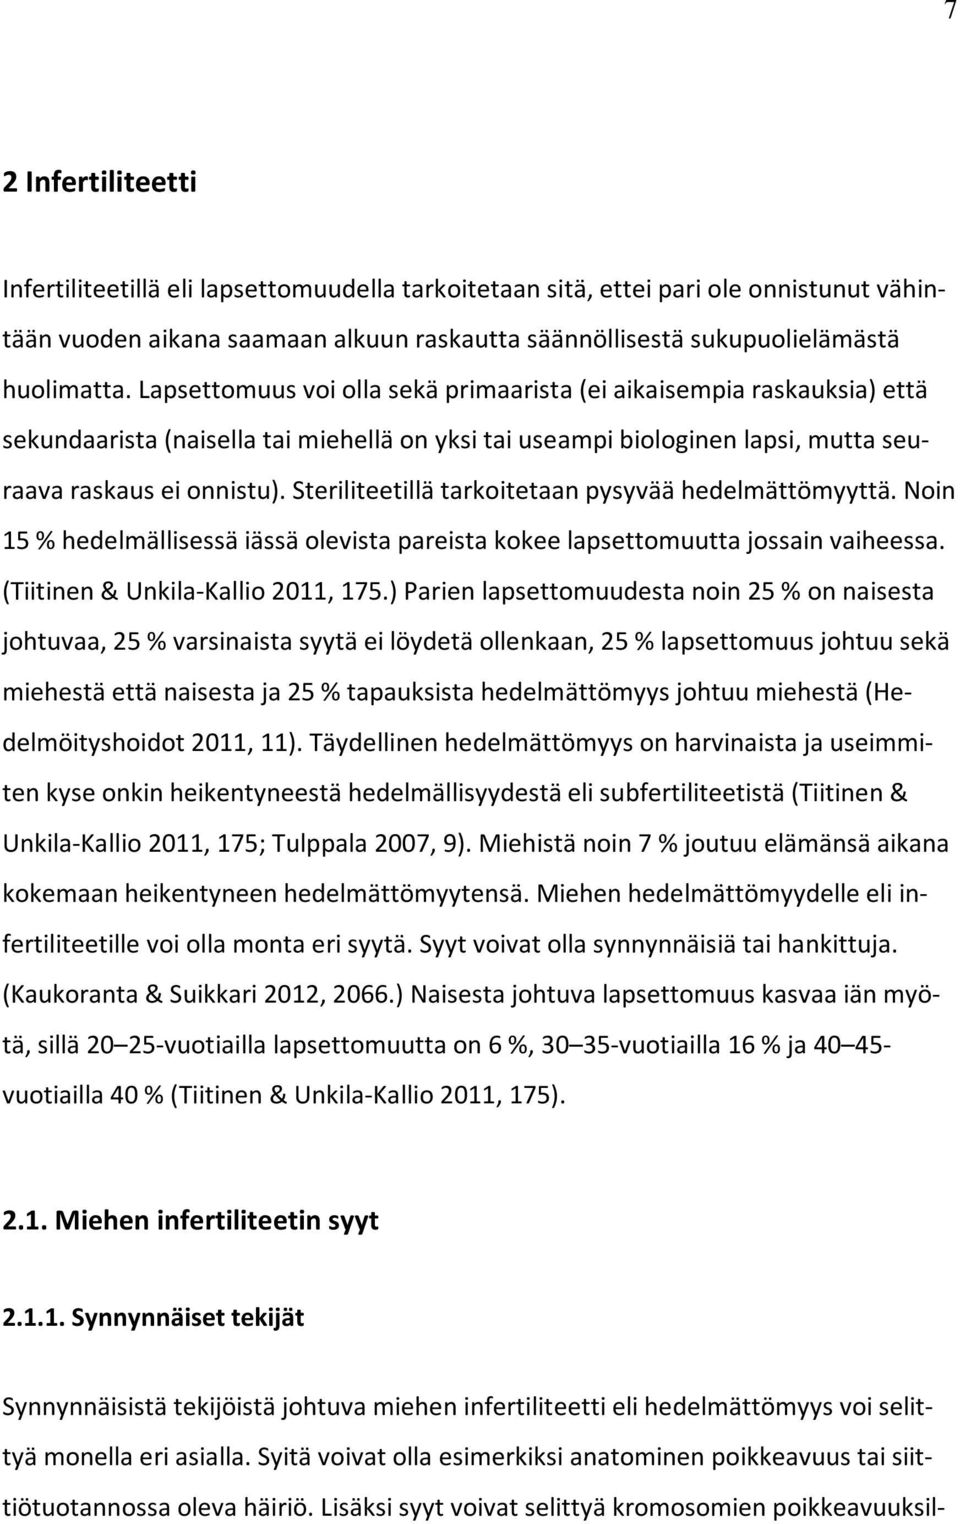 Steriliteetillä tarkoitetaan pysyvää hedelmättömyyttä. Noin 15 % hedelmällisessä iässä olevista pareista kokee lapsettomuutta jossain vaiheessa. (Tiitinen & Unkila-Kallio 2011, 175.